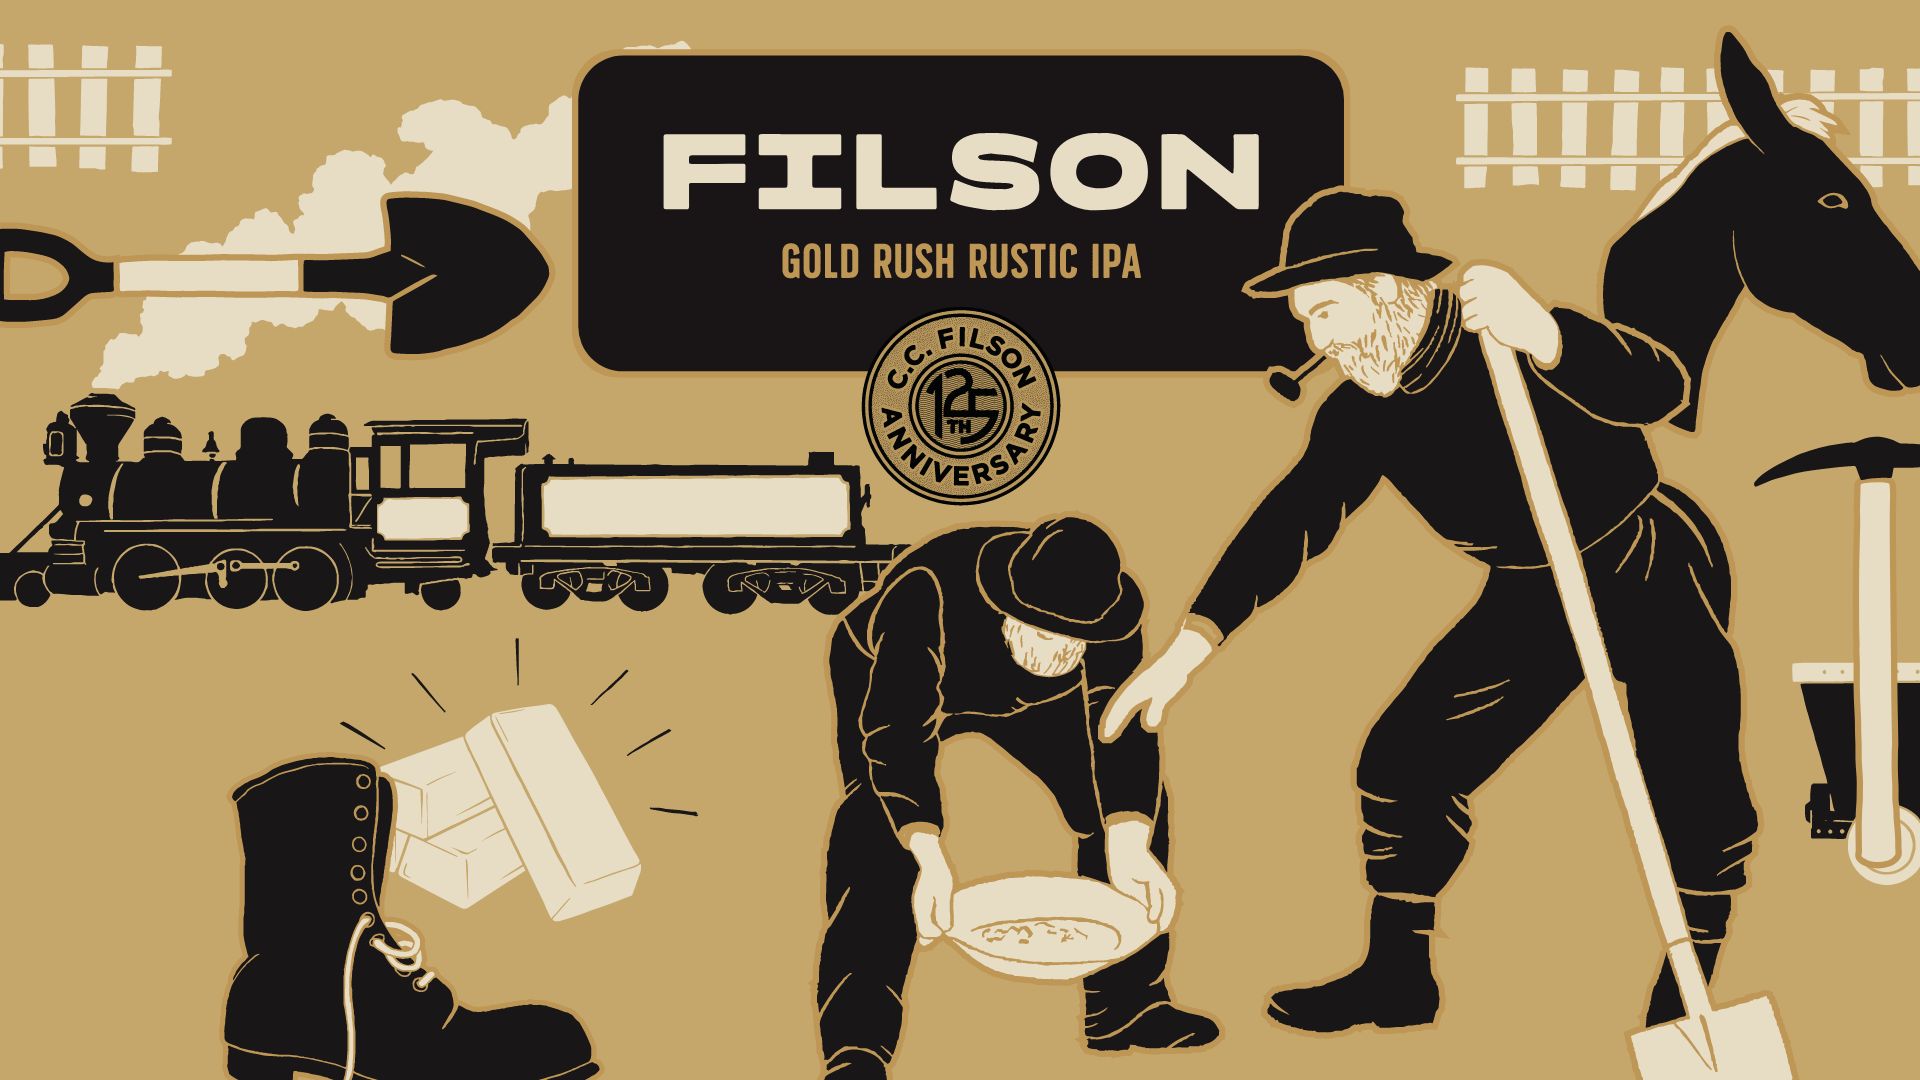 Filson Gold Rush Full Label Art